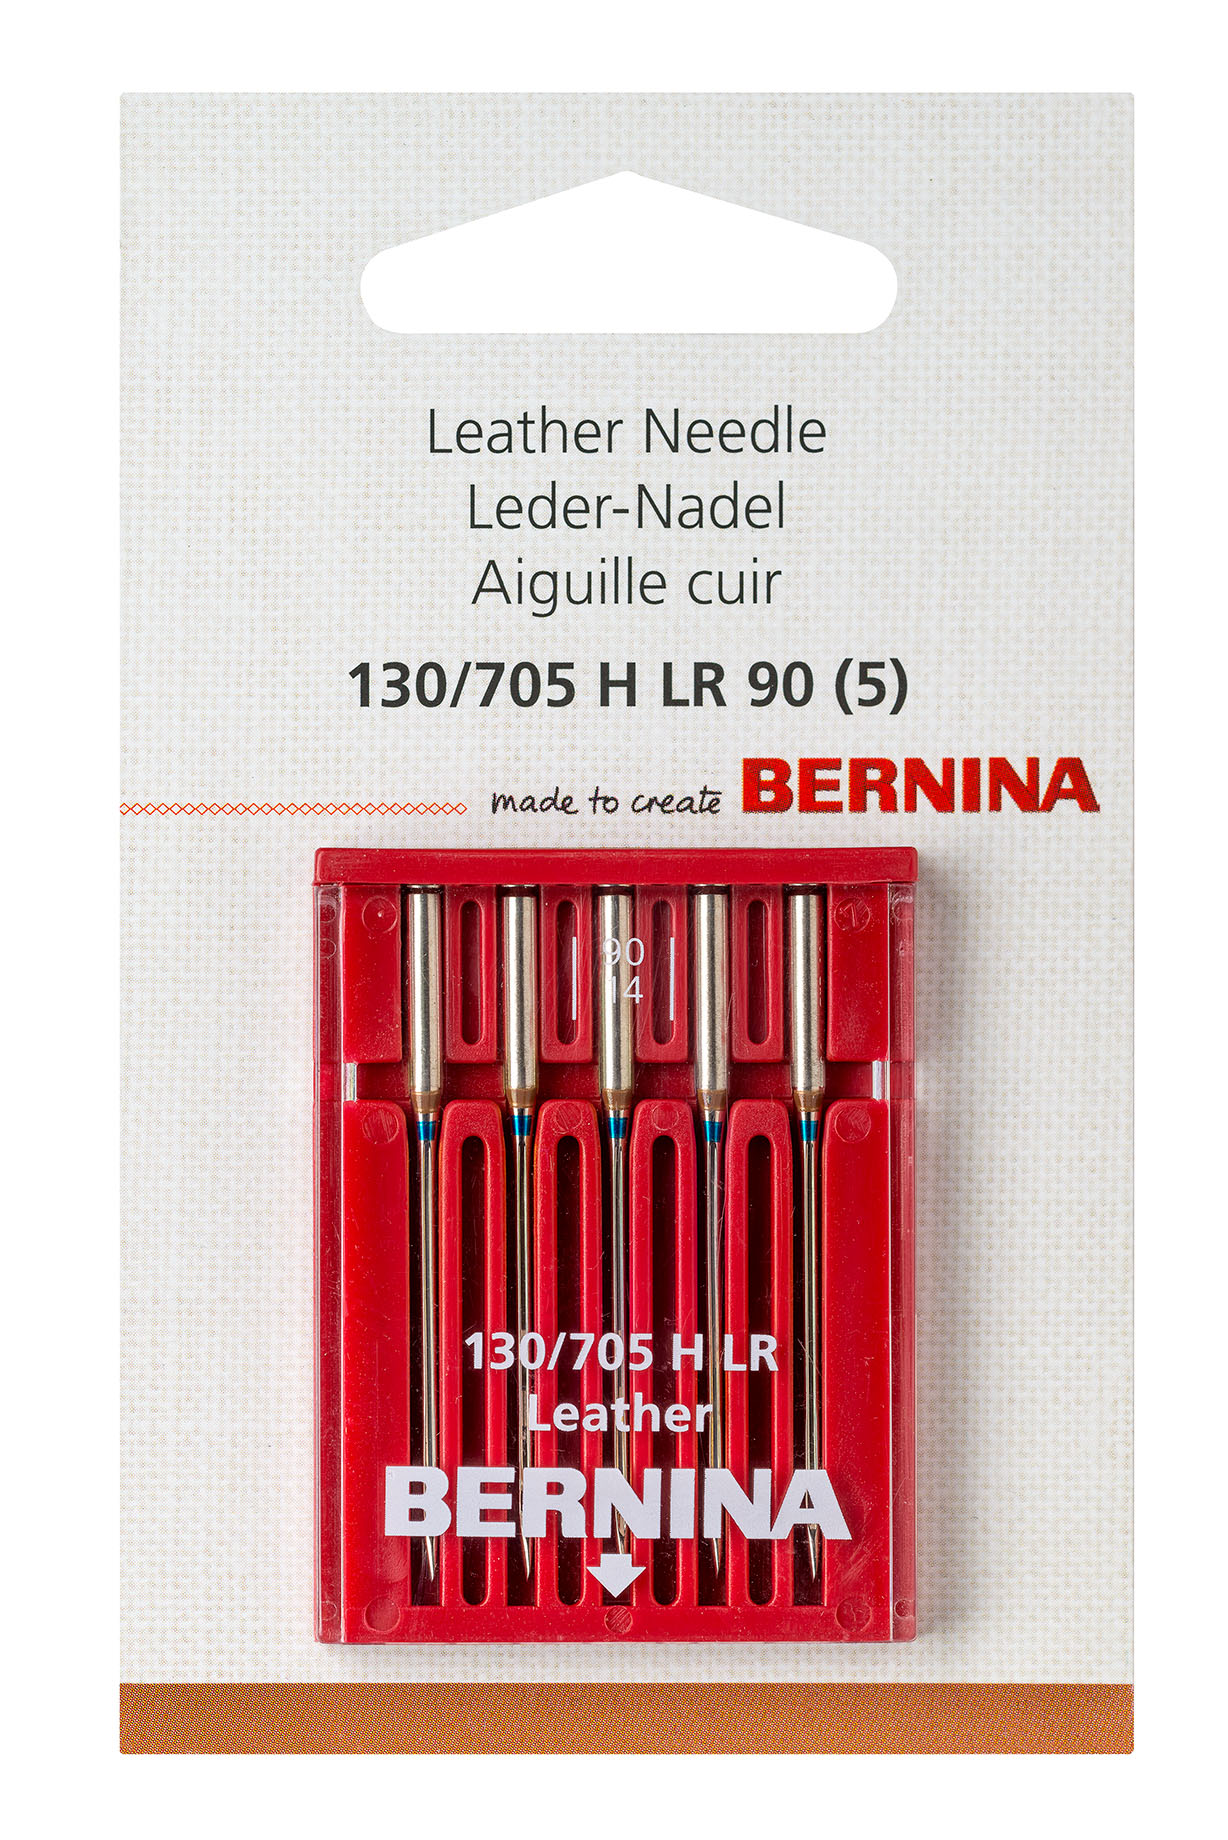 Leather needle